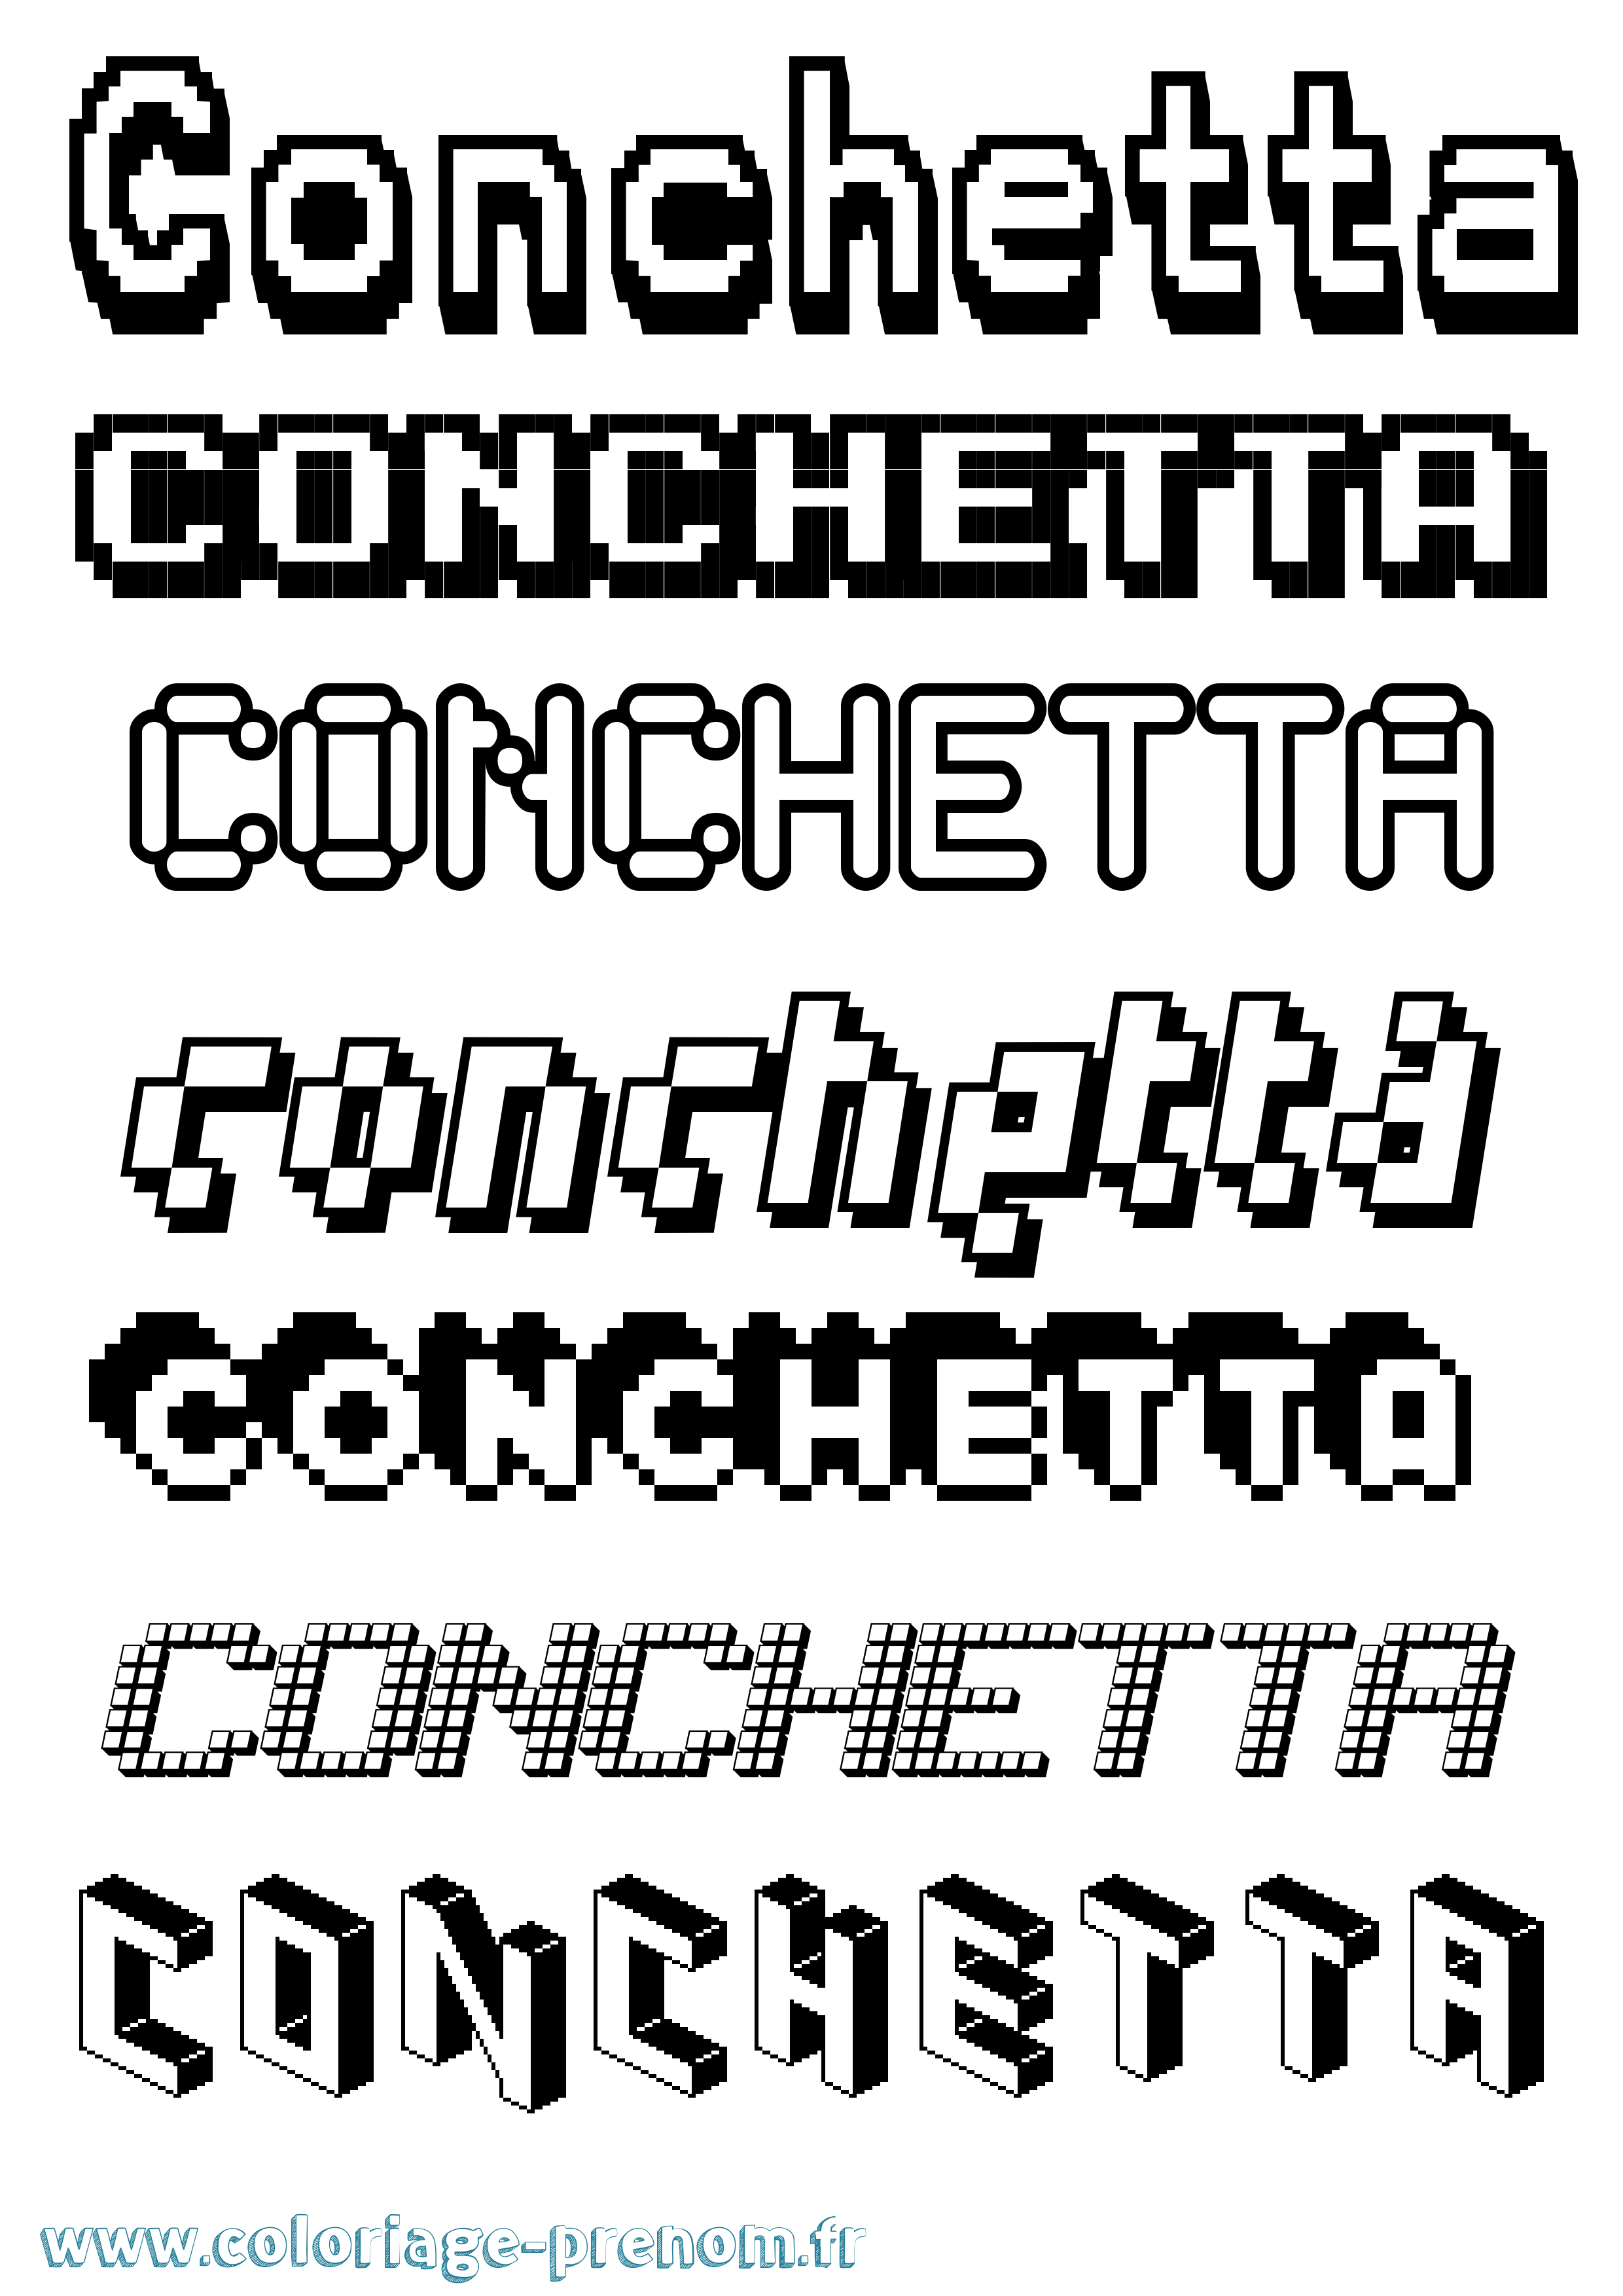 Coloriage prénom Conchetta Pixel